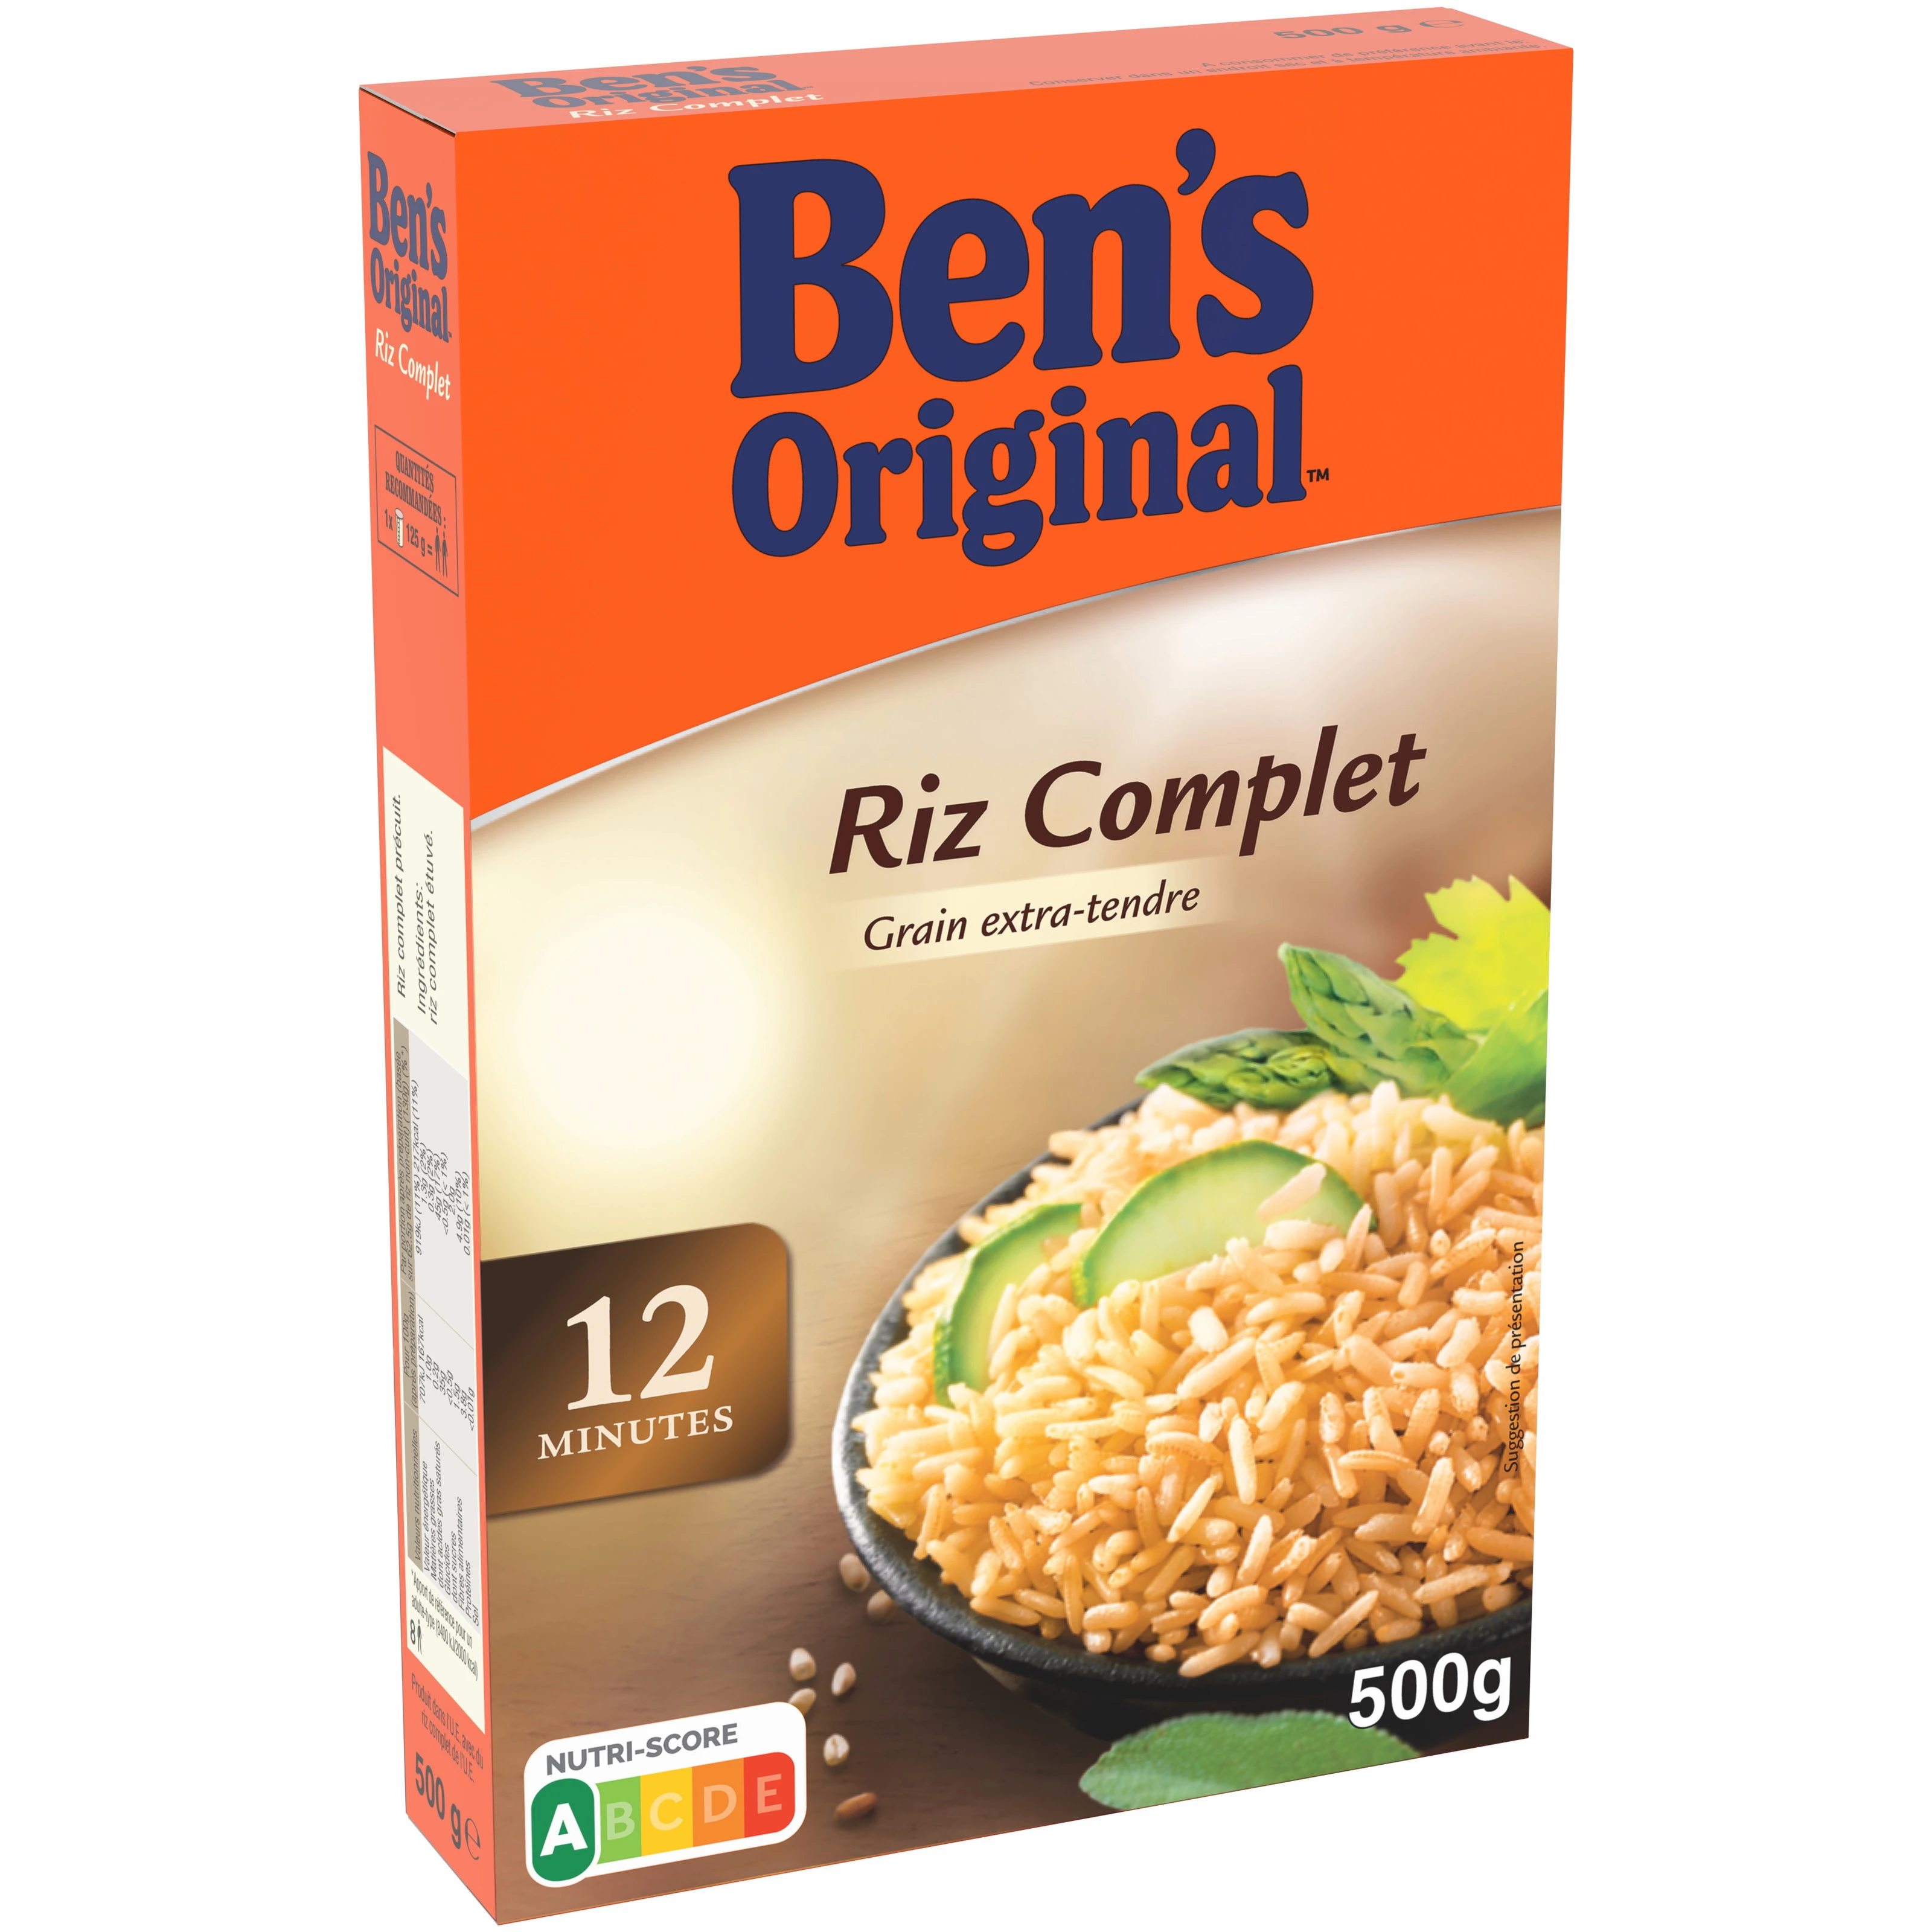 Riz Complet Vrac, 500g - BEN'S Original